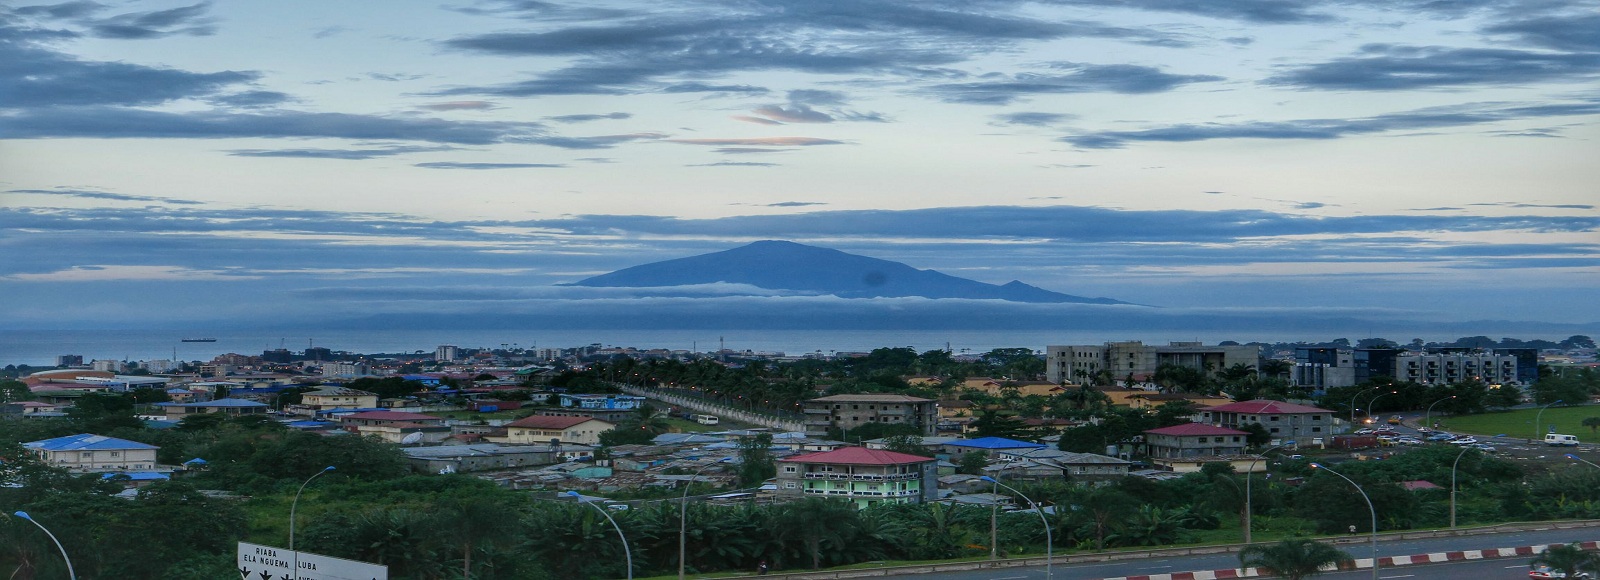 Ofertas de Traslados en Guinea Ecuatorial. Traslados económicos en Guinea Ecuatorial 